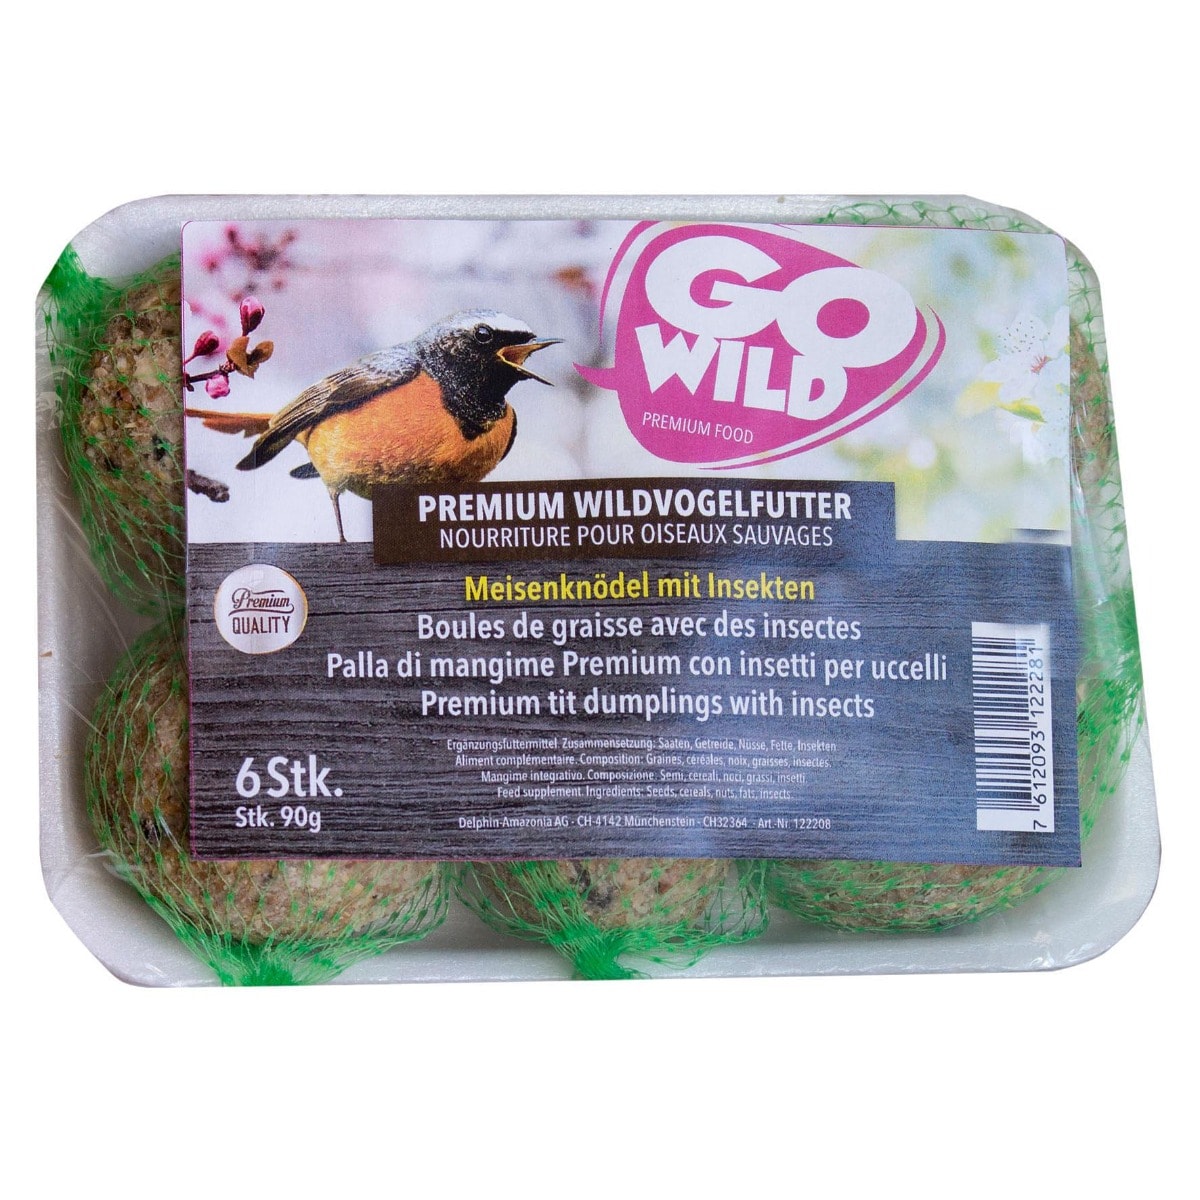 Nourriture premium pour oiseaux sauvages graines de tournesol décortiquées  acheter en ligne